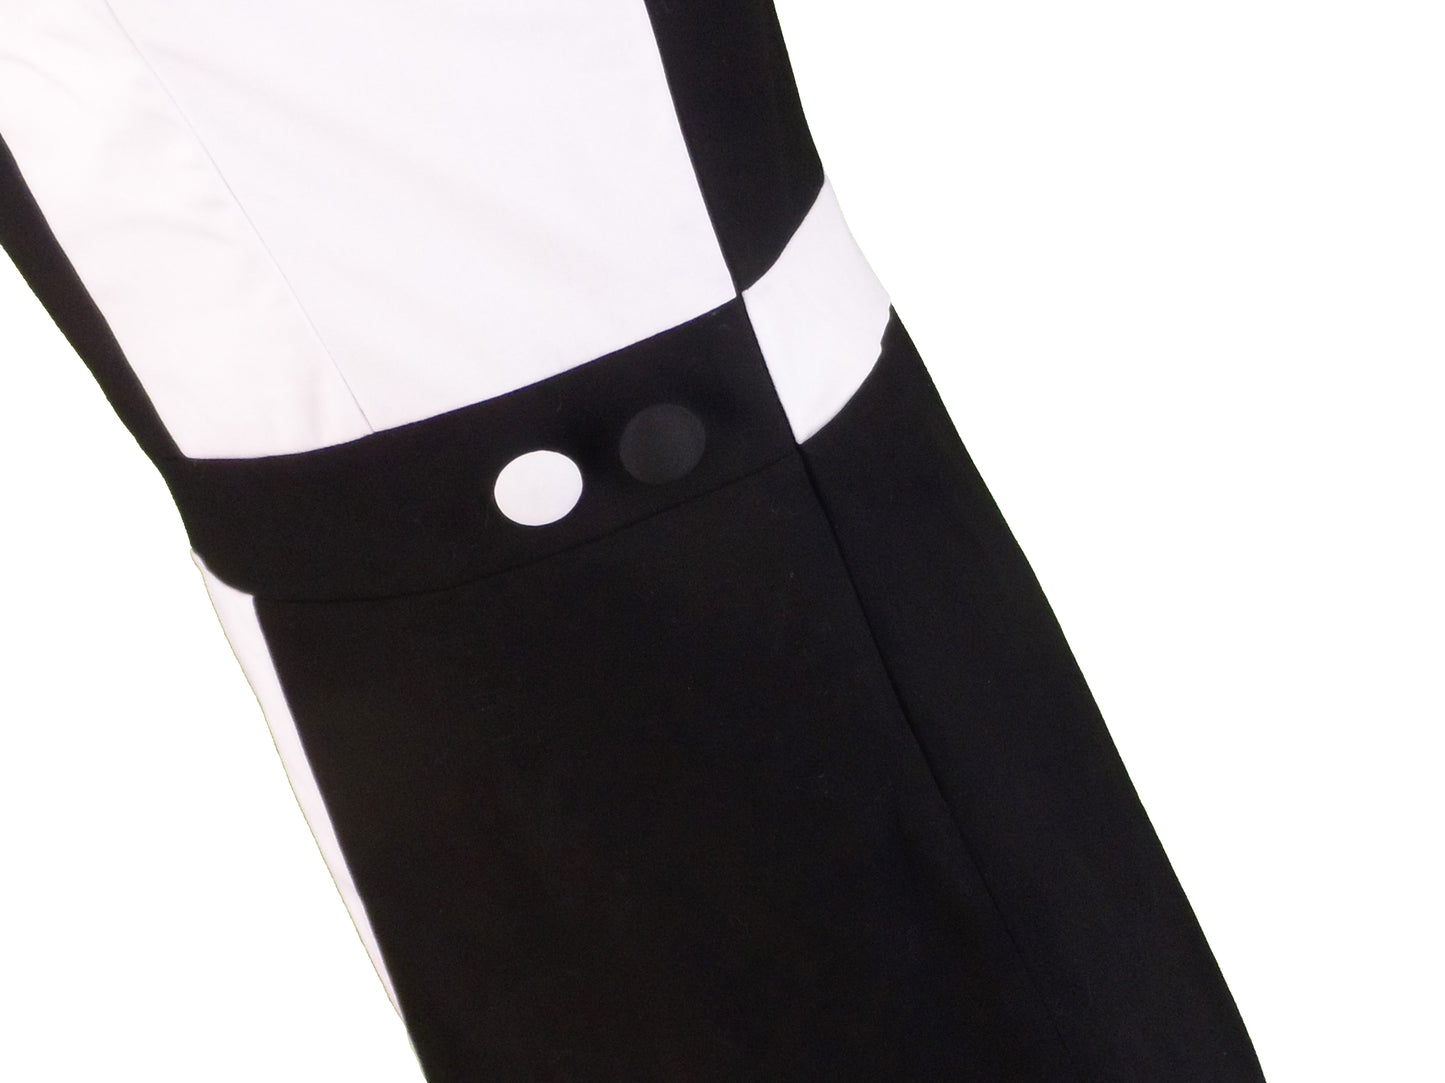 Mazeys vestido cuadrante blanco y negro retro mod vintage de los años 60 para mujer